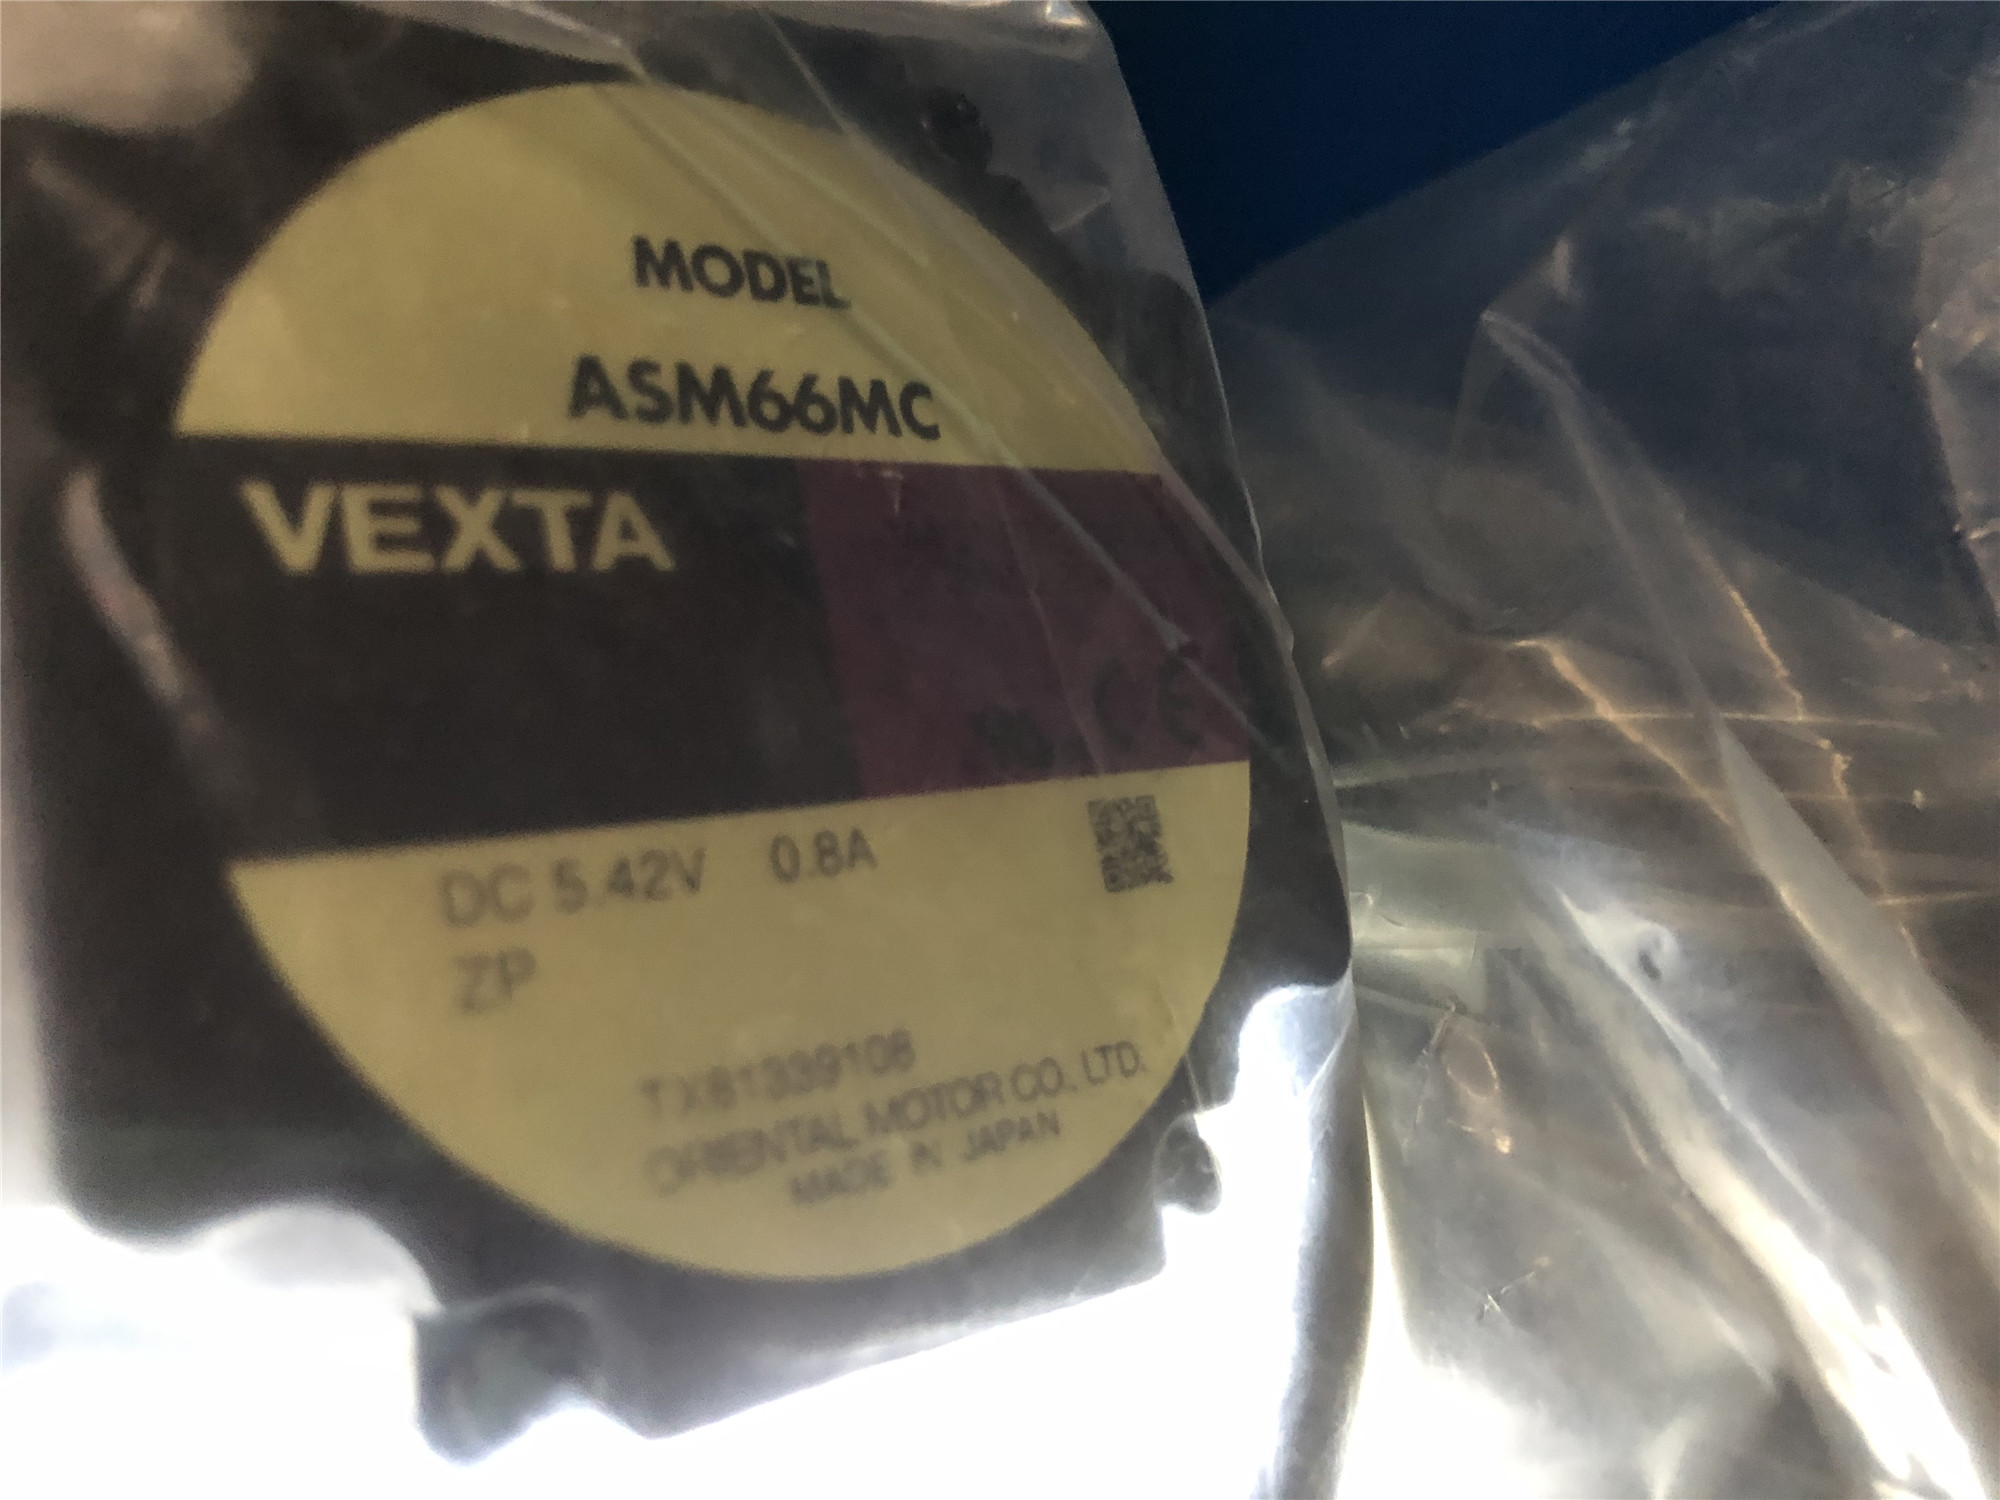 VEXTA Motor ASM66MC